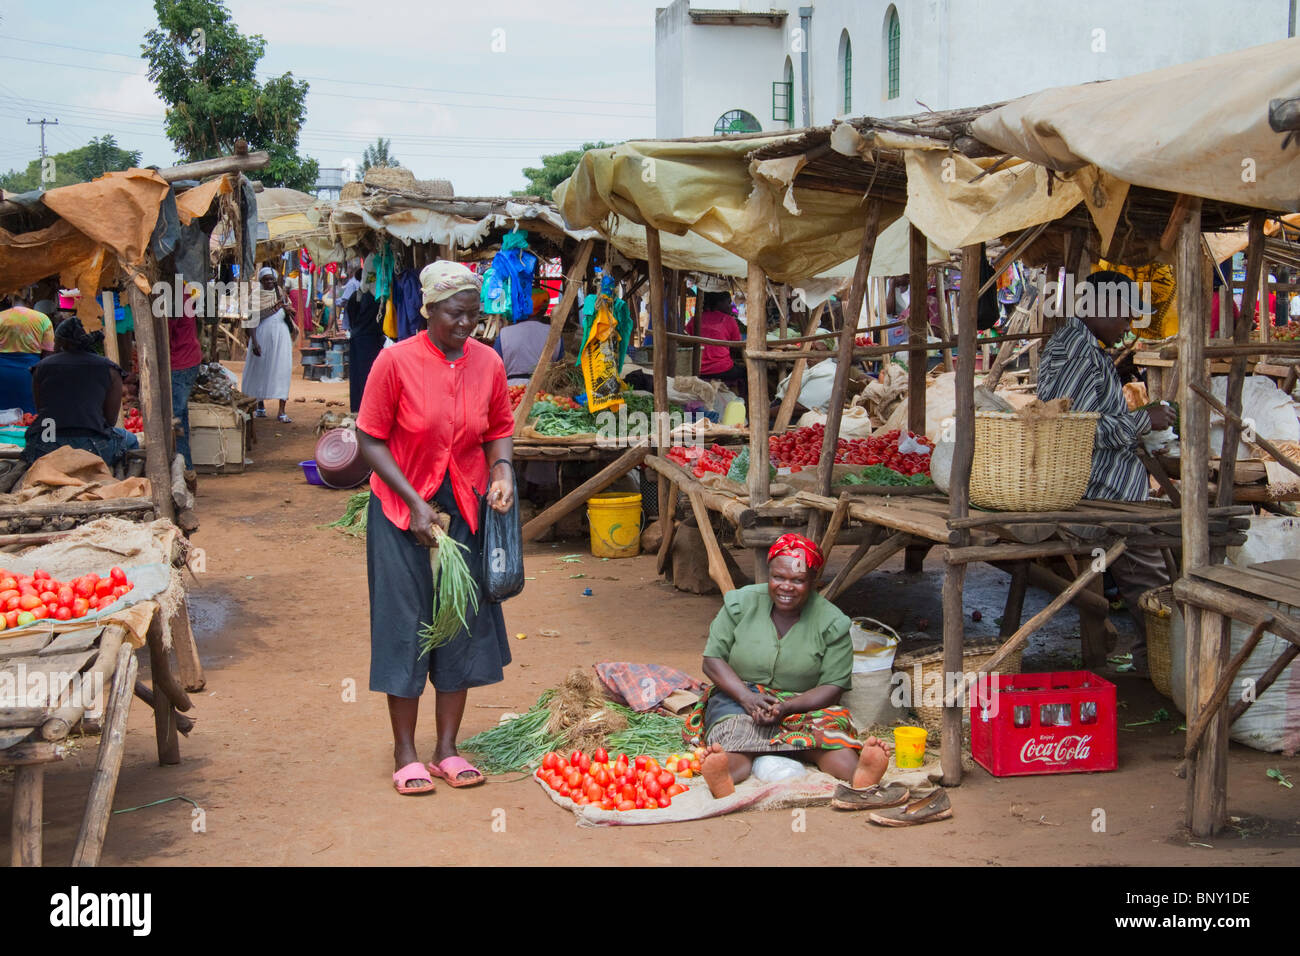 A village flea-market in Kenya Stock Photo